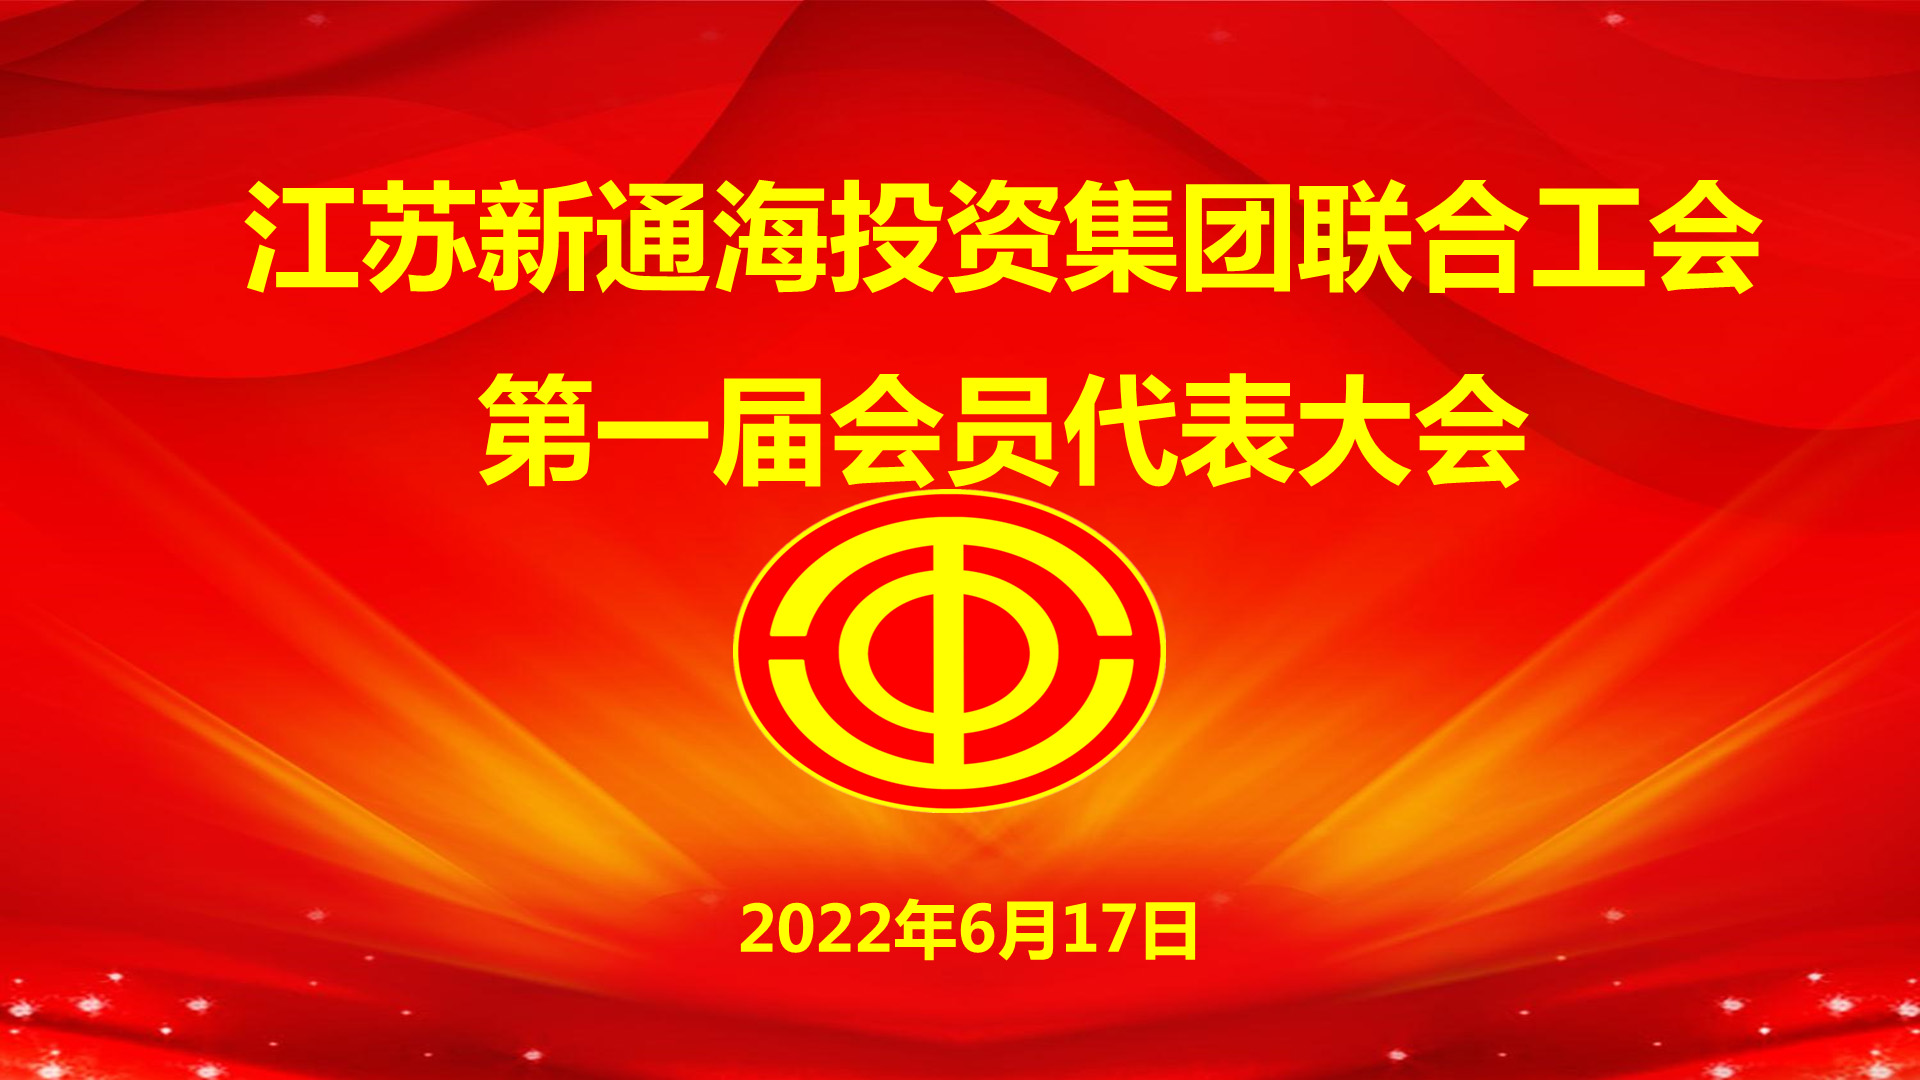 江苏新通海投资集团联合工会成立大会胜利召开